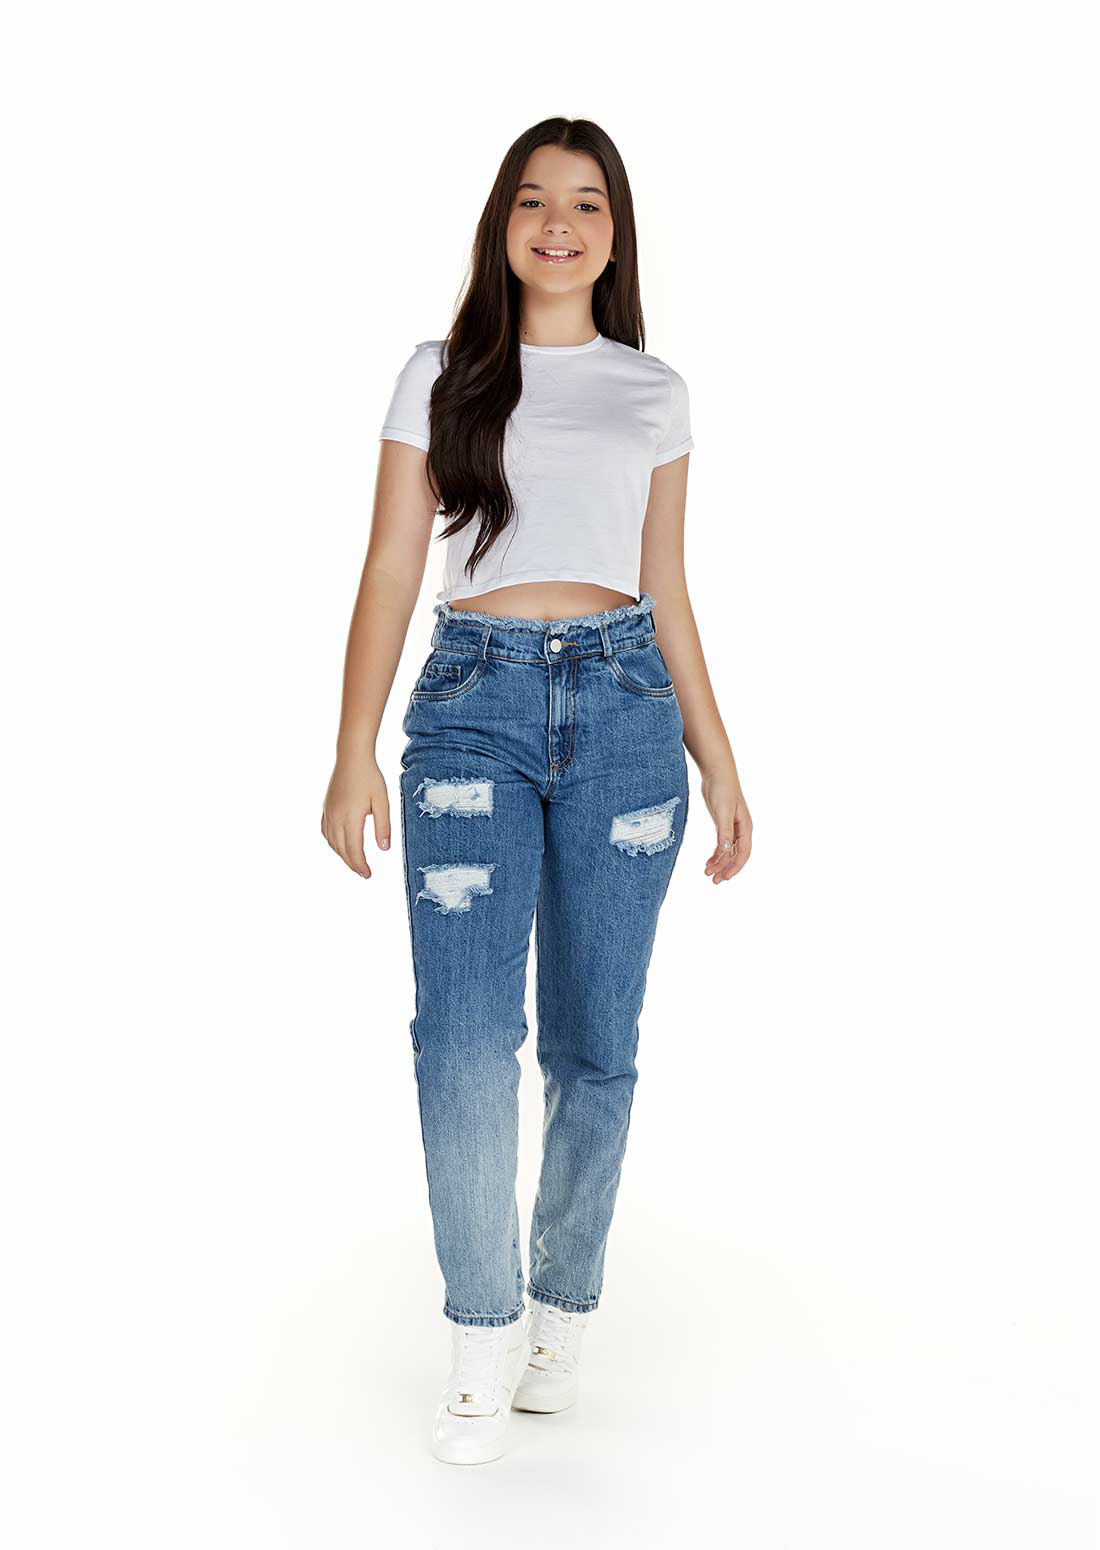 Esperar algo Compasión Comienzo Ropa y jeans para niñas y adolescentes | Yoyo Jeans